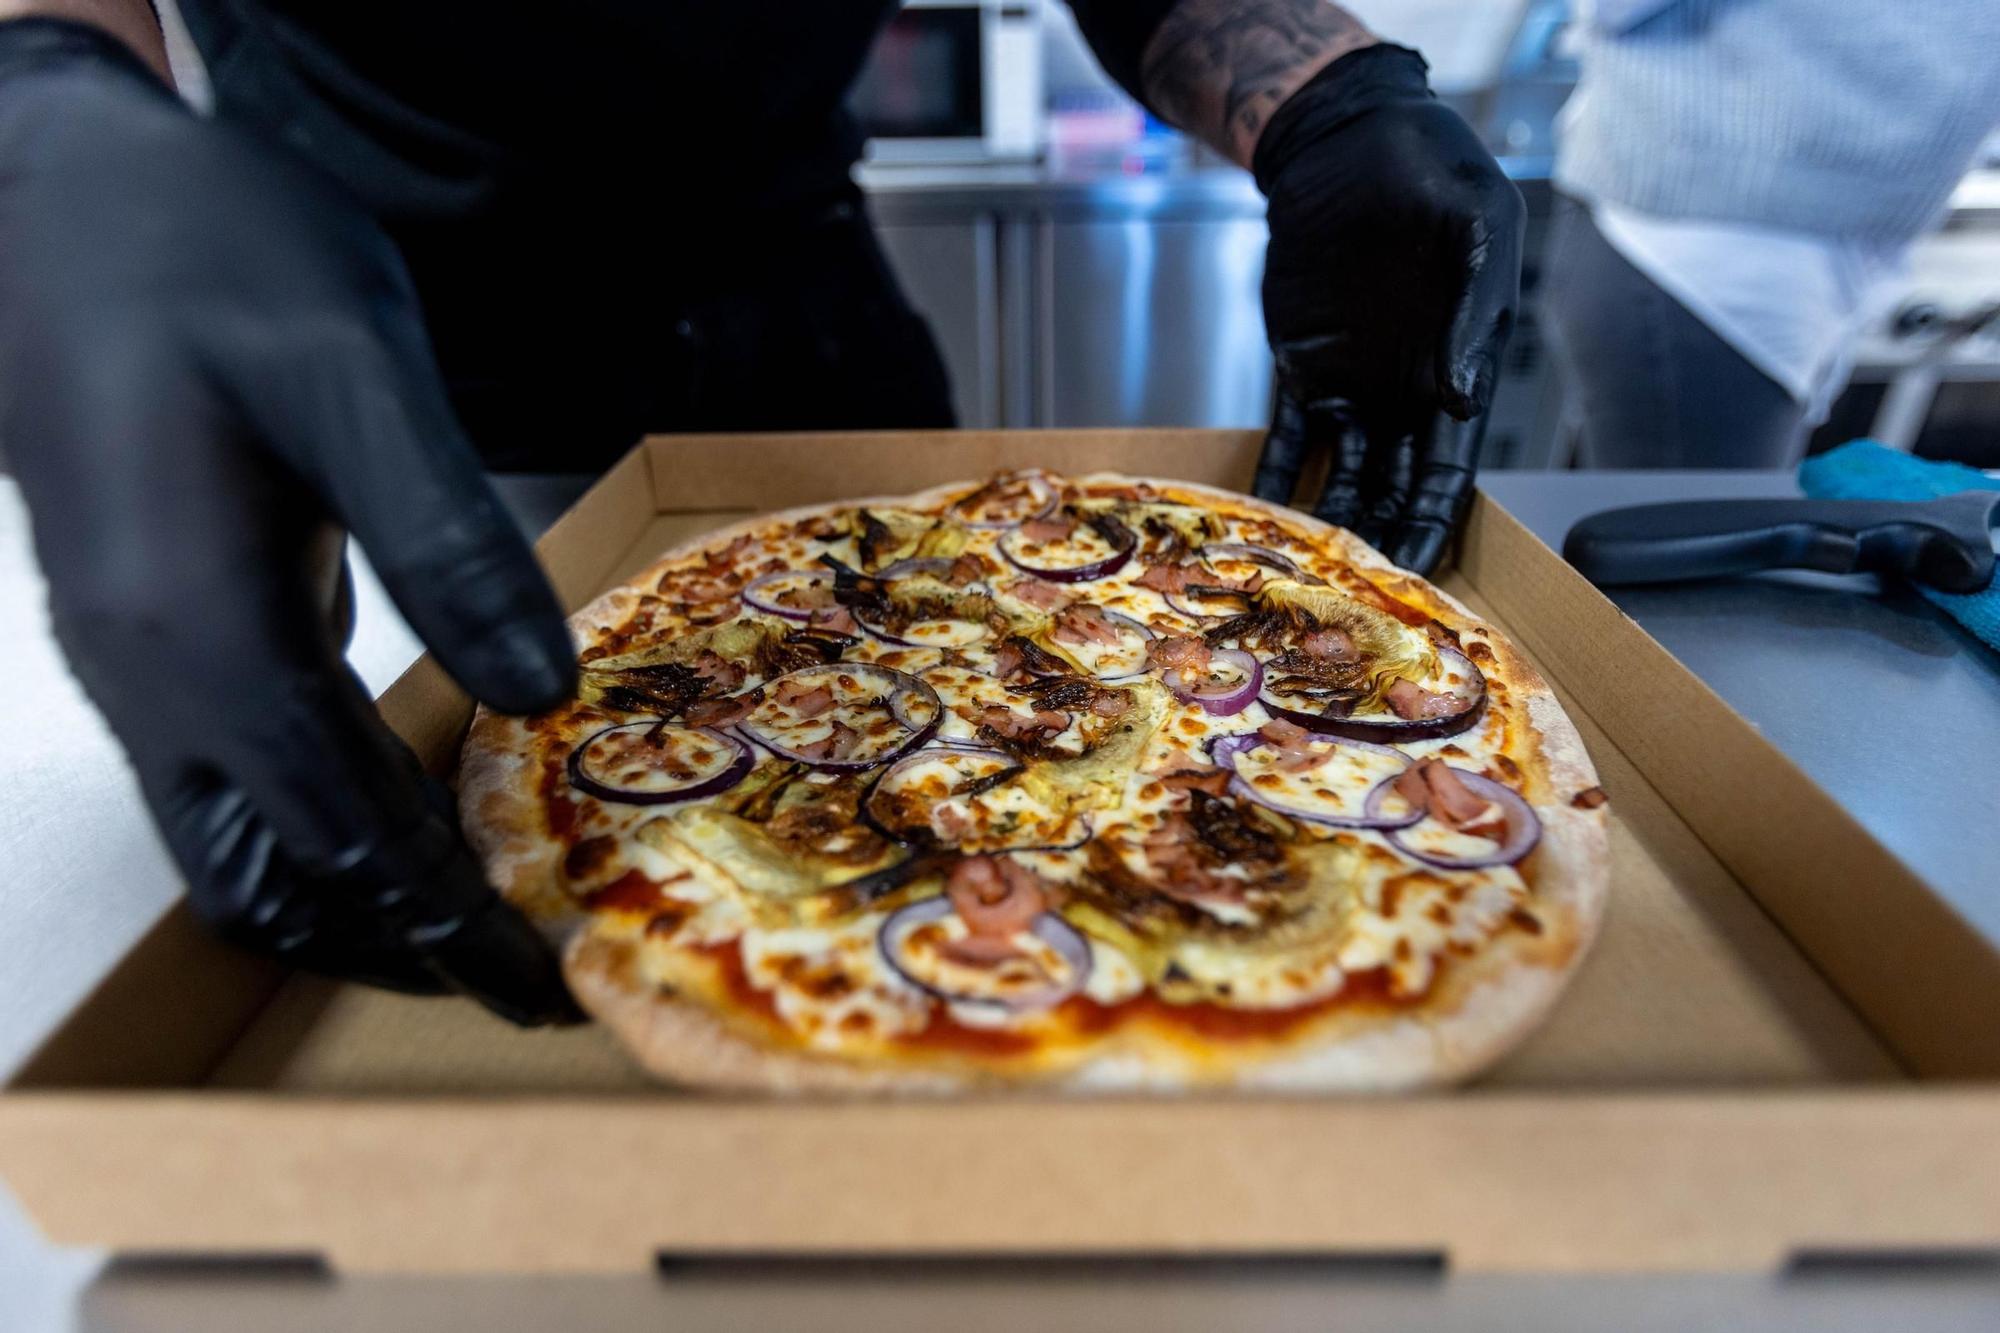 Servipizza elabora artesanalmente sus pizzas en su propio obrador